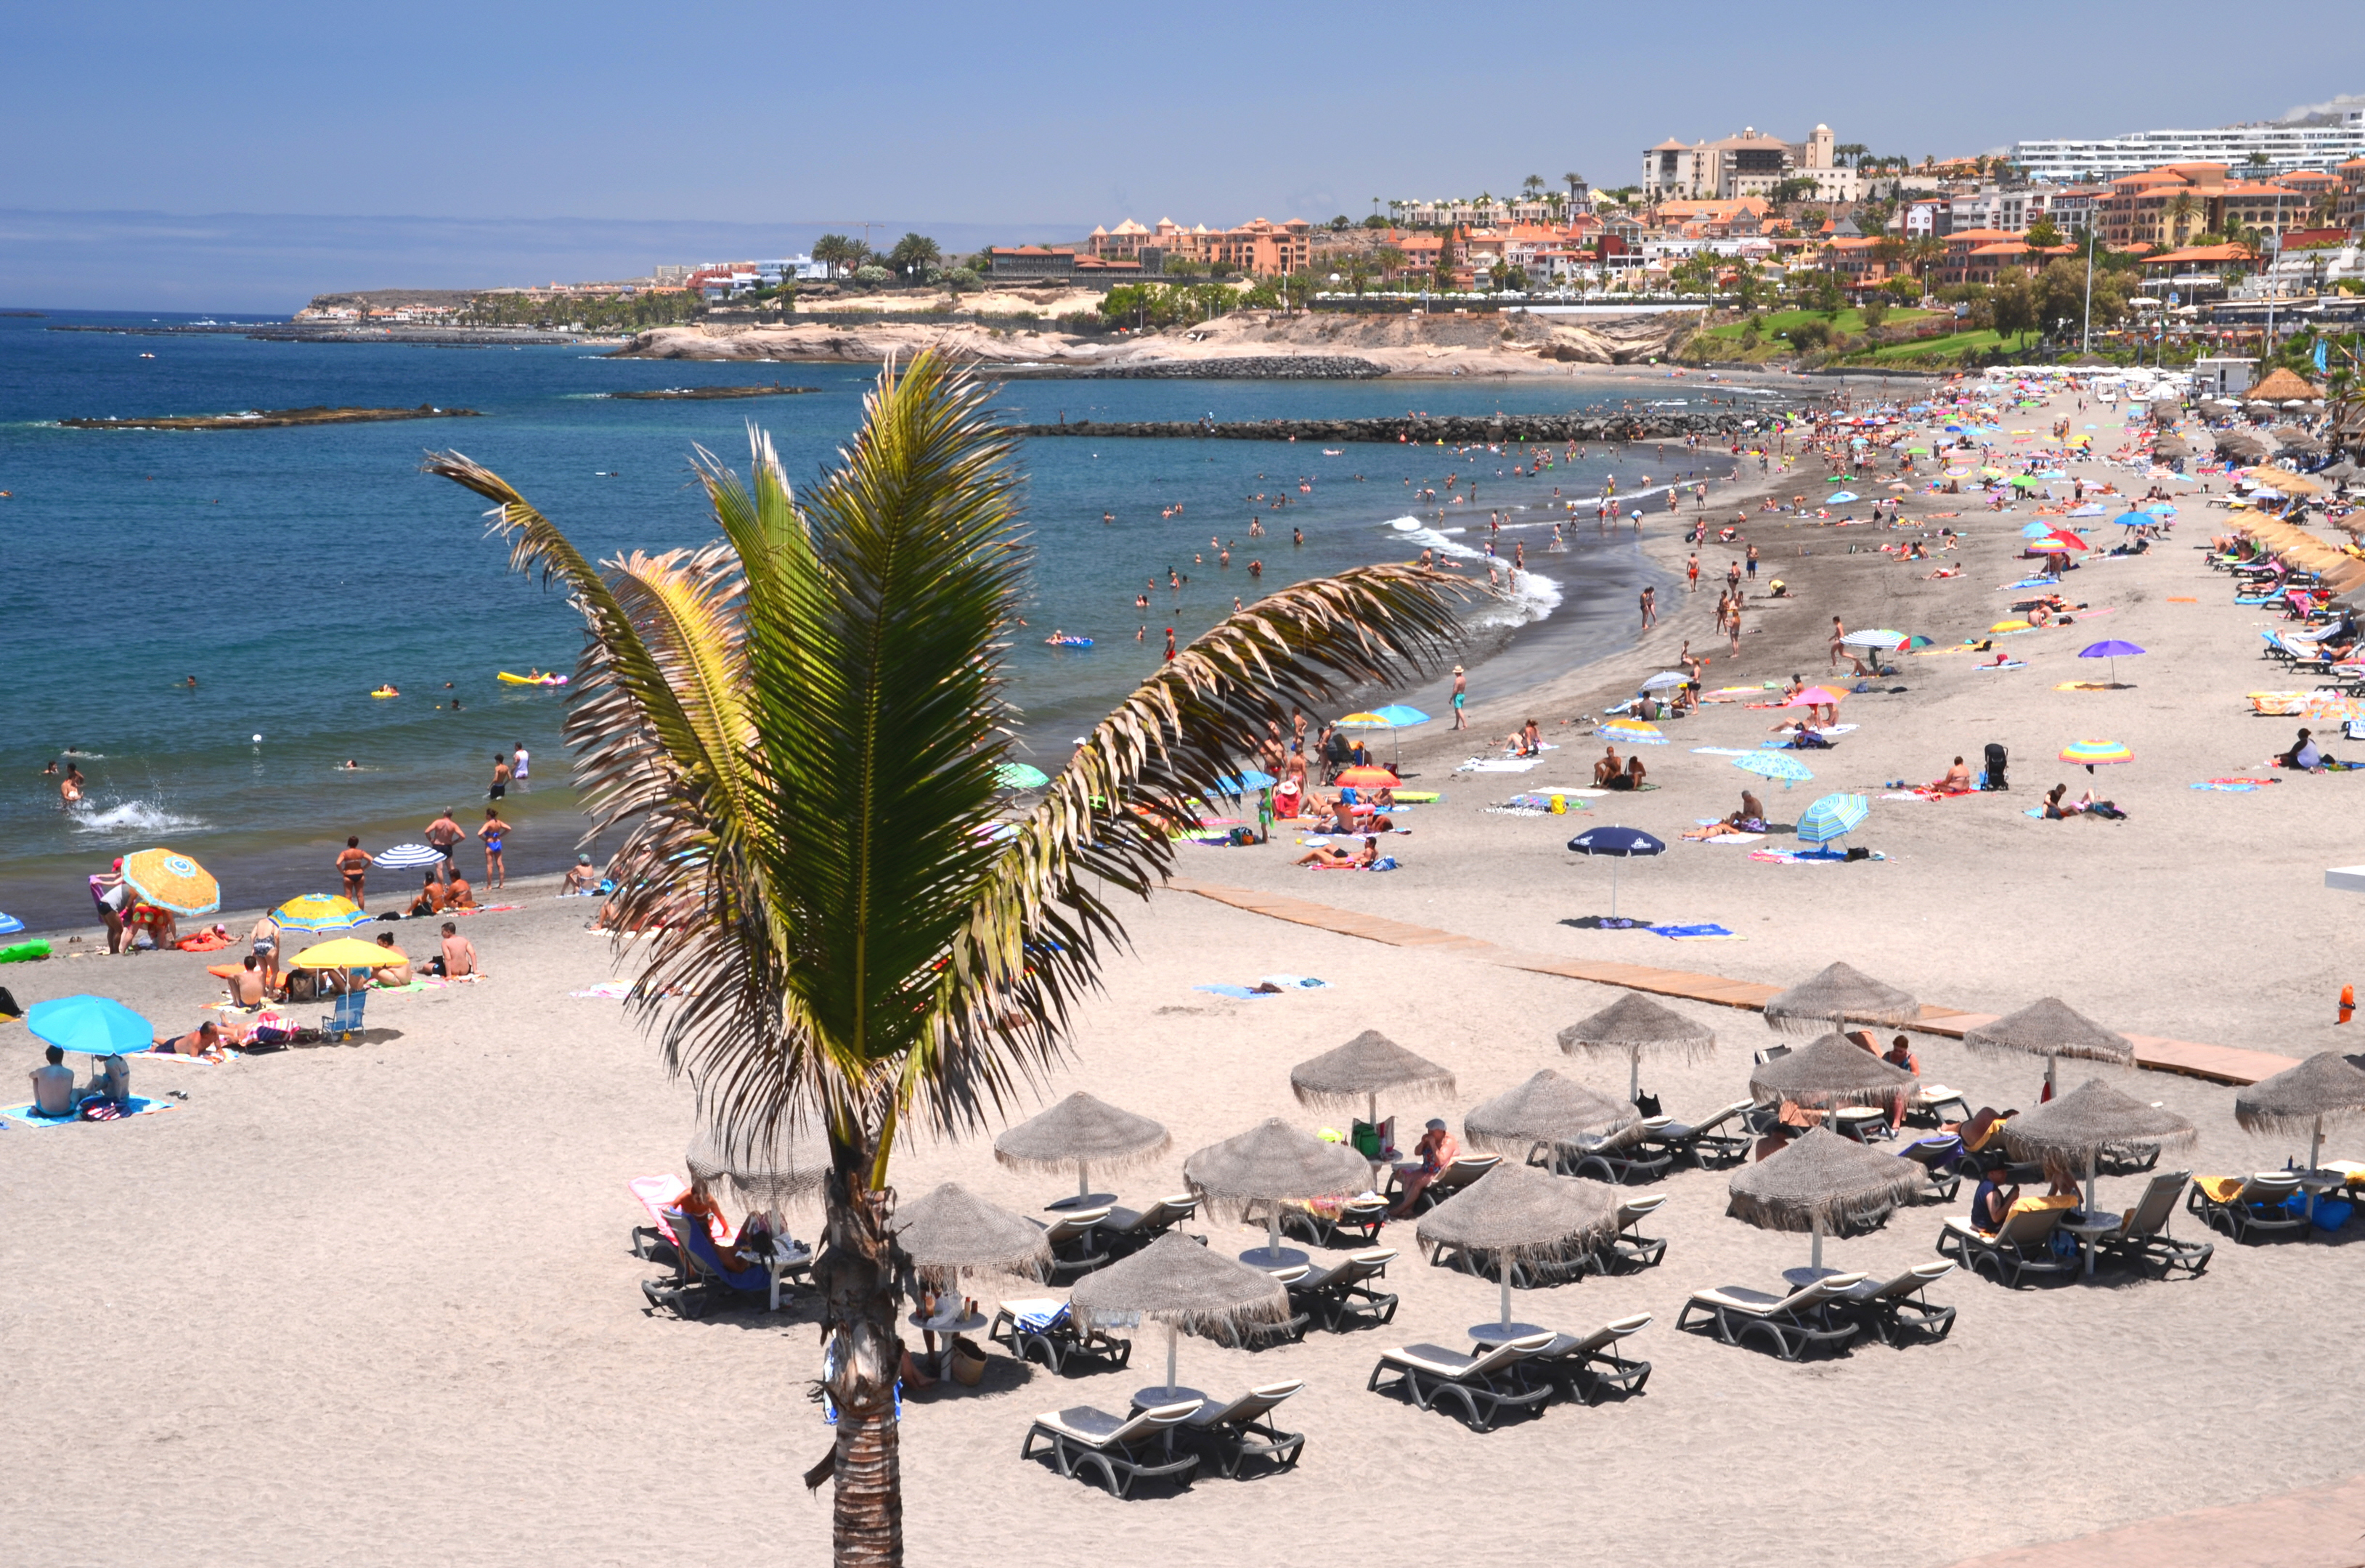 Playa de Torviscas in Adeje on Tenerife (Getty Images)